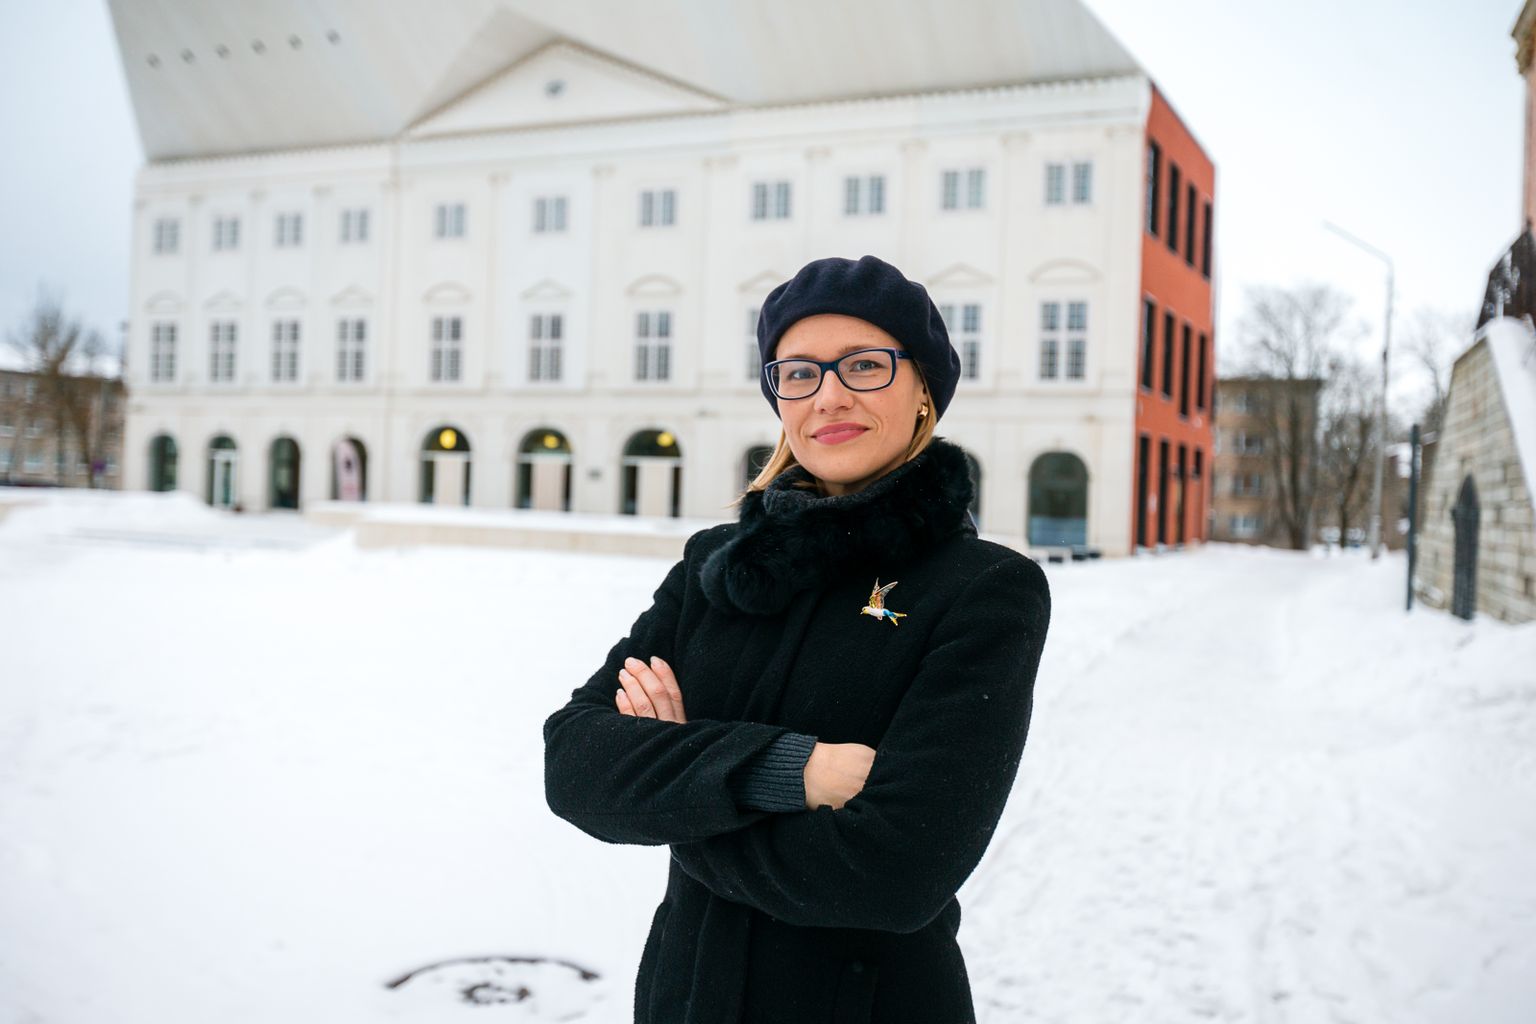 Май-Лийз Пальгинымм уверена, что отметивший 20-летие Нарвский колледж никуда не денется, поскольку он нужен региону - не только в качестве учреждения образования, но и в качестве эстонского посольства